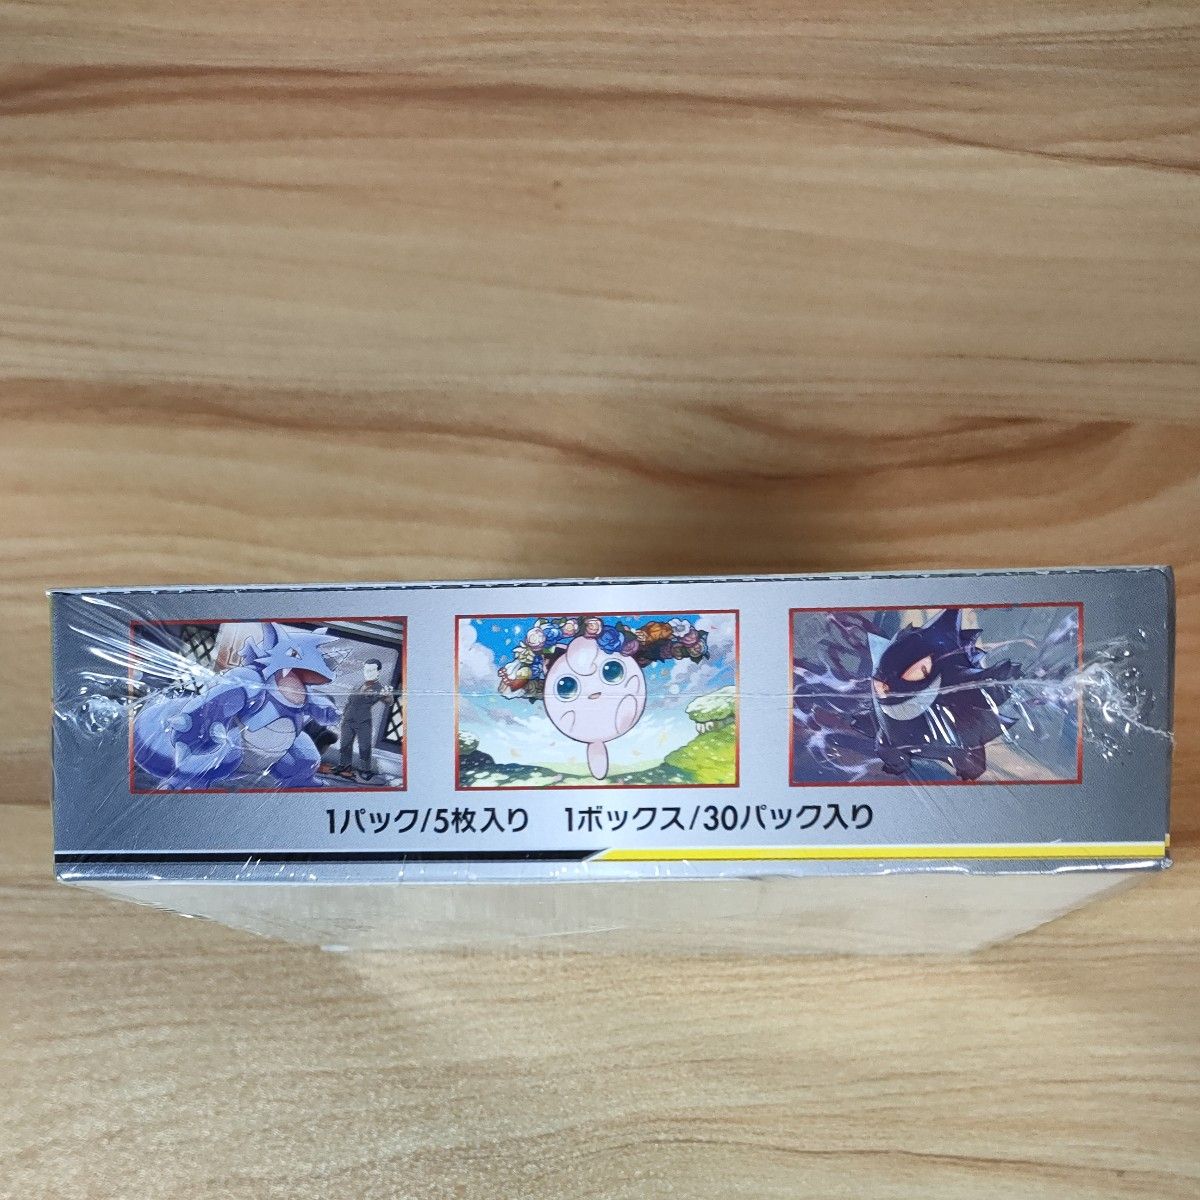 【新品未開封・正規品】ポケモンカードゲーム サン&ムーン 拡張パック ダブルブレイズ  Pokemon Card  1BOX